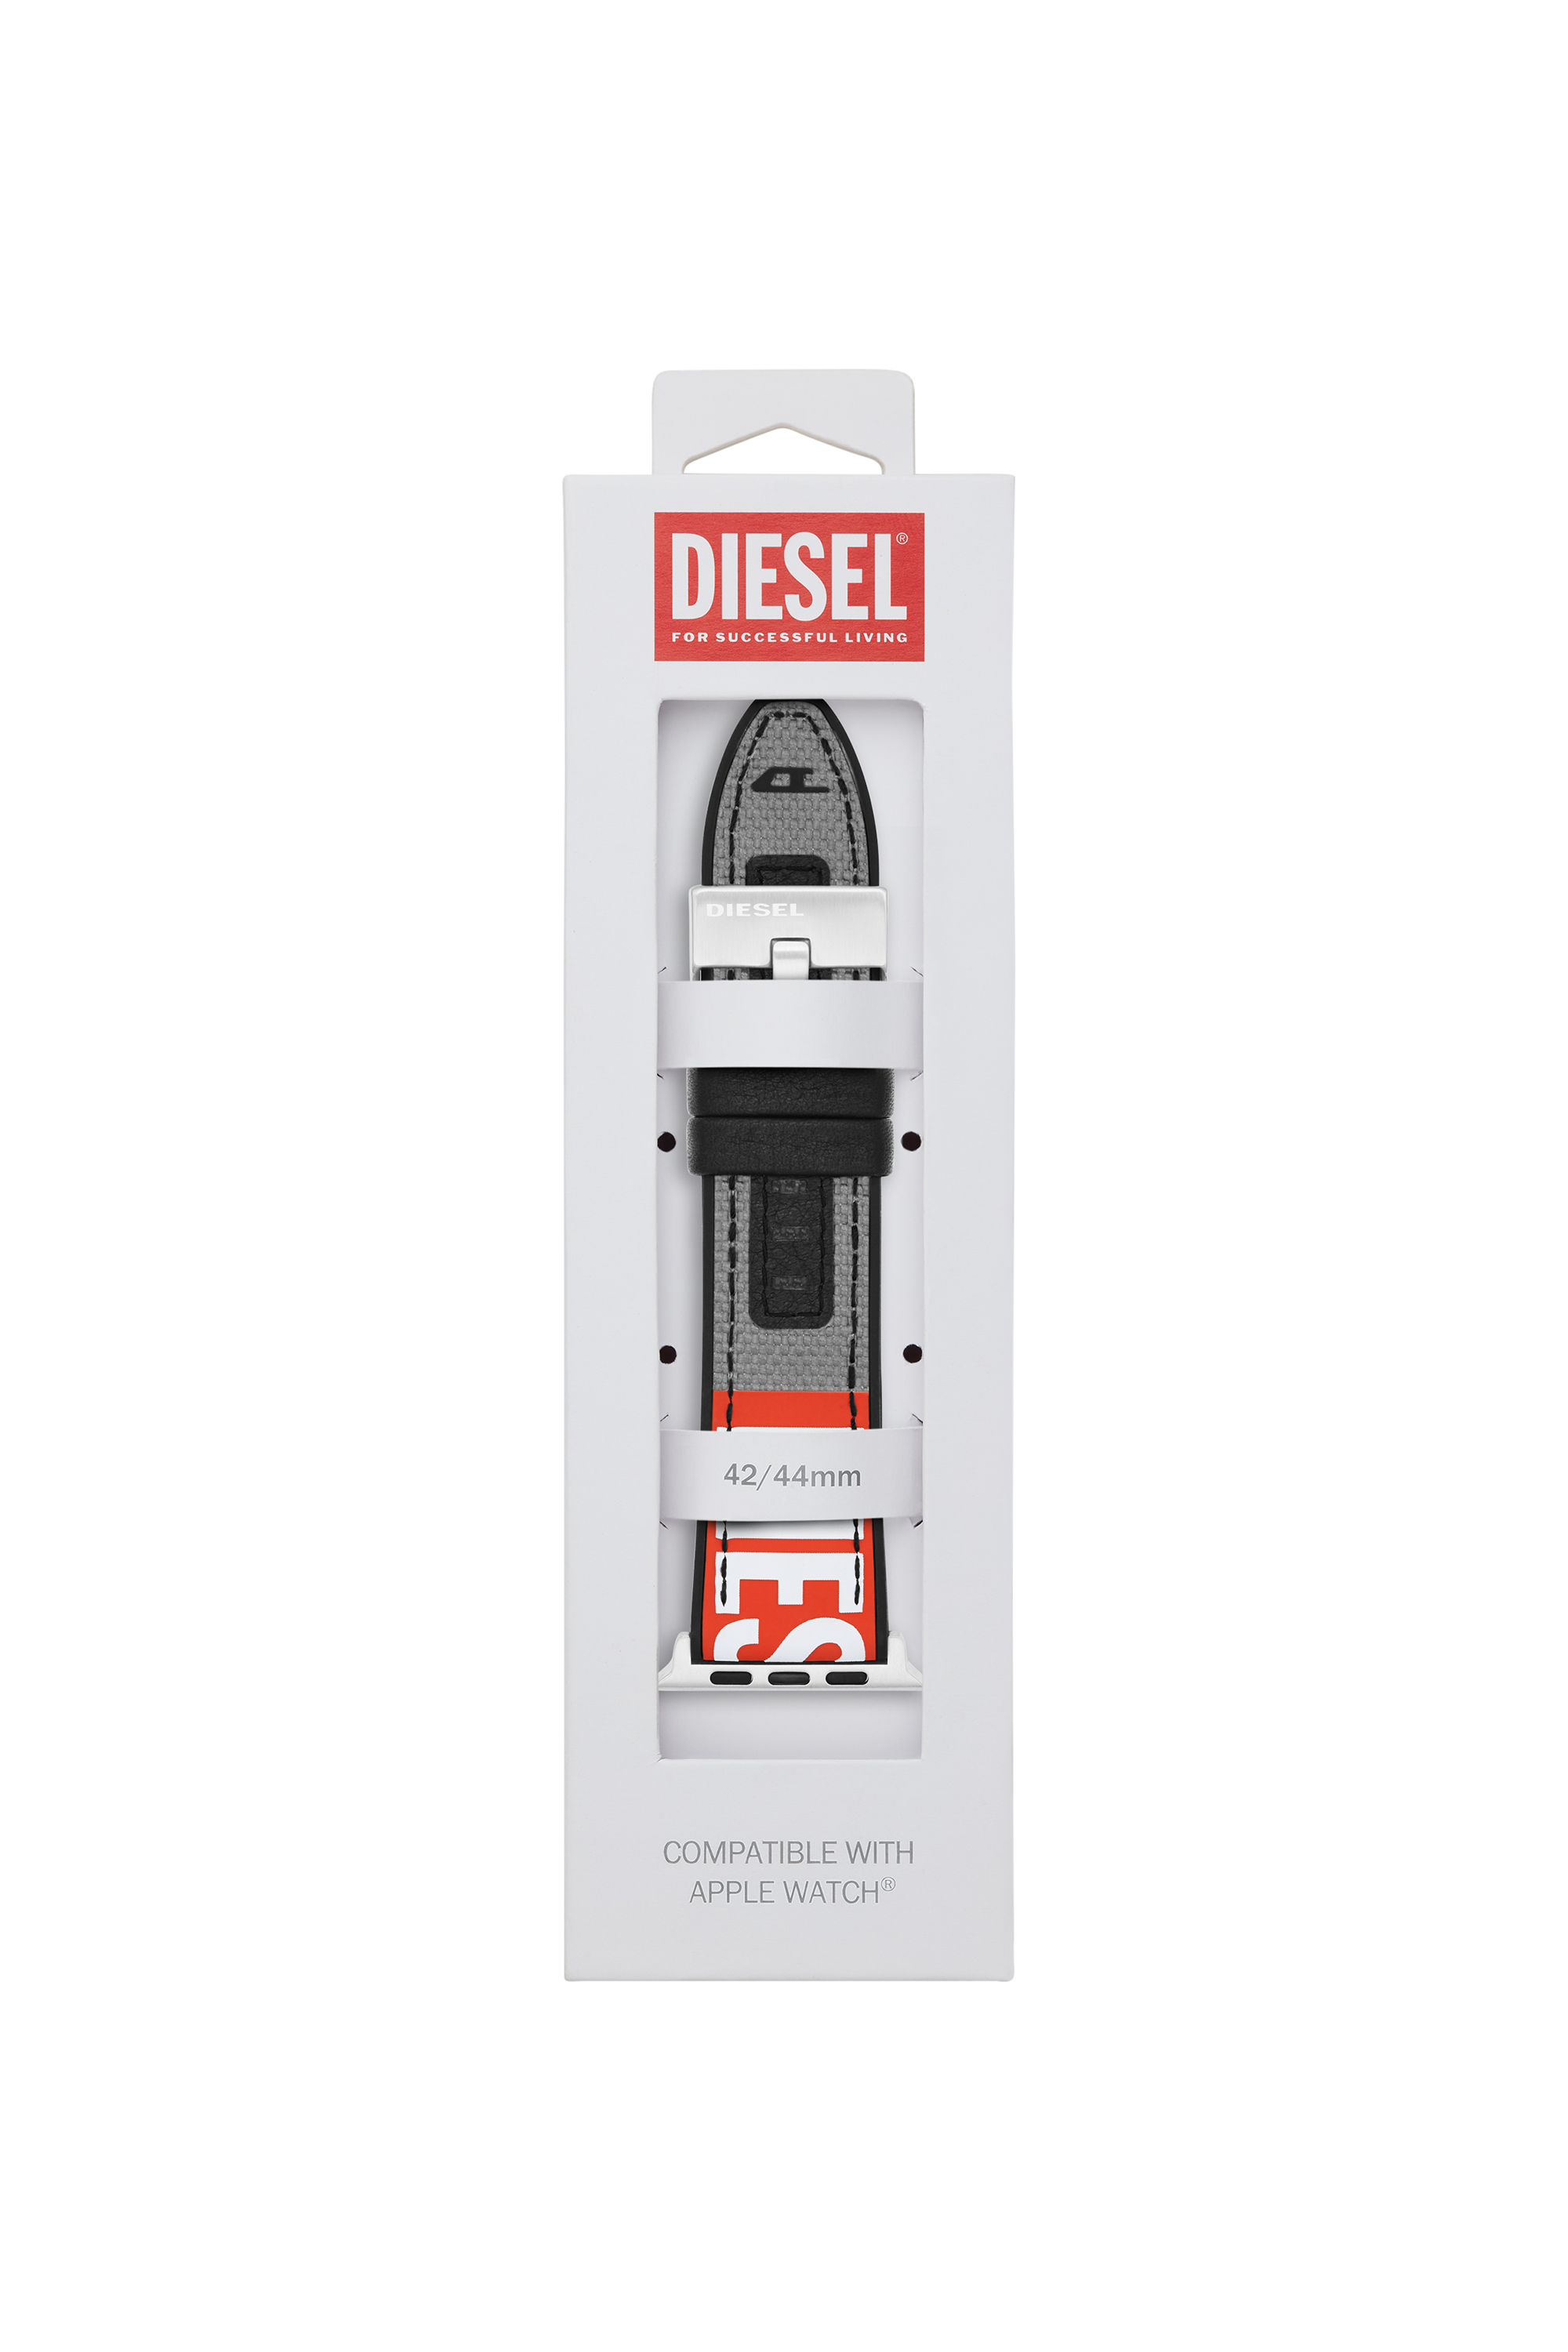 Diesel - DSS006, Grey - Image 2